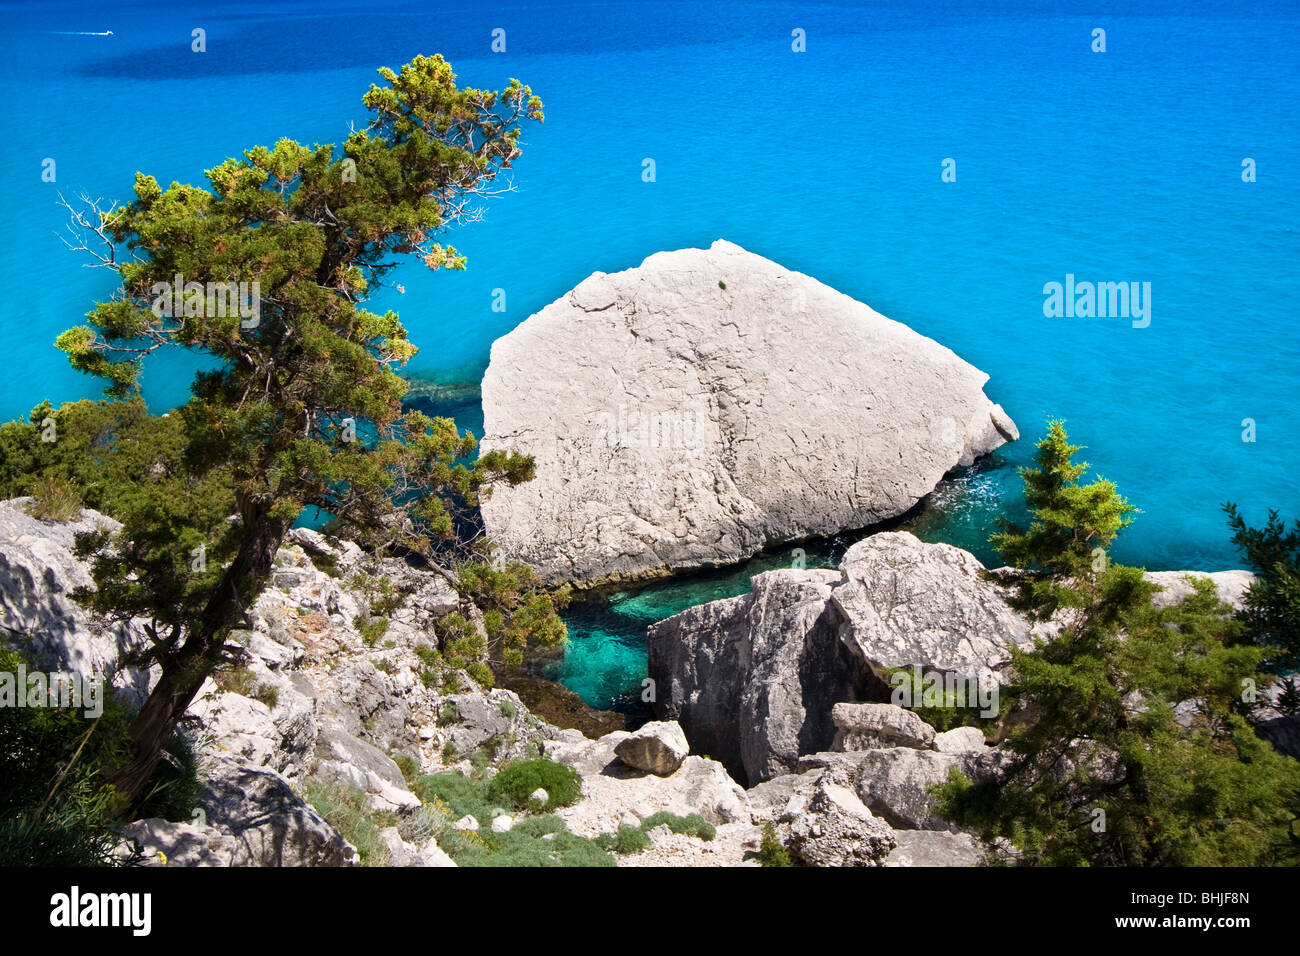 Plage Cala Luna vide bay, l'île de Sardaigne en Italie. Eau bleu clair dans la baie de Cala Luna, Mer Méditerranée. Banque D'Images